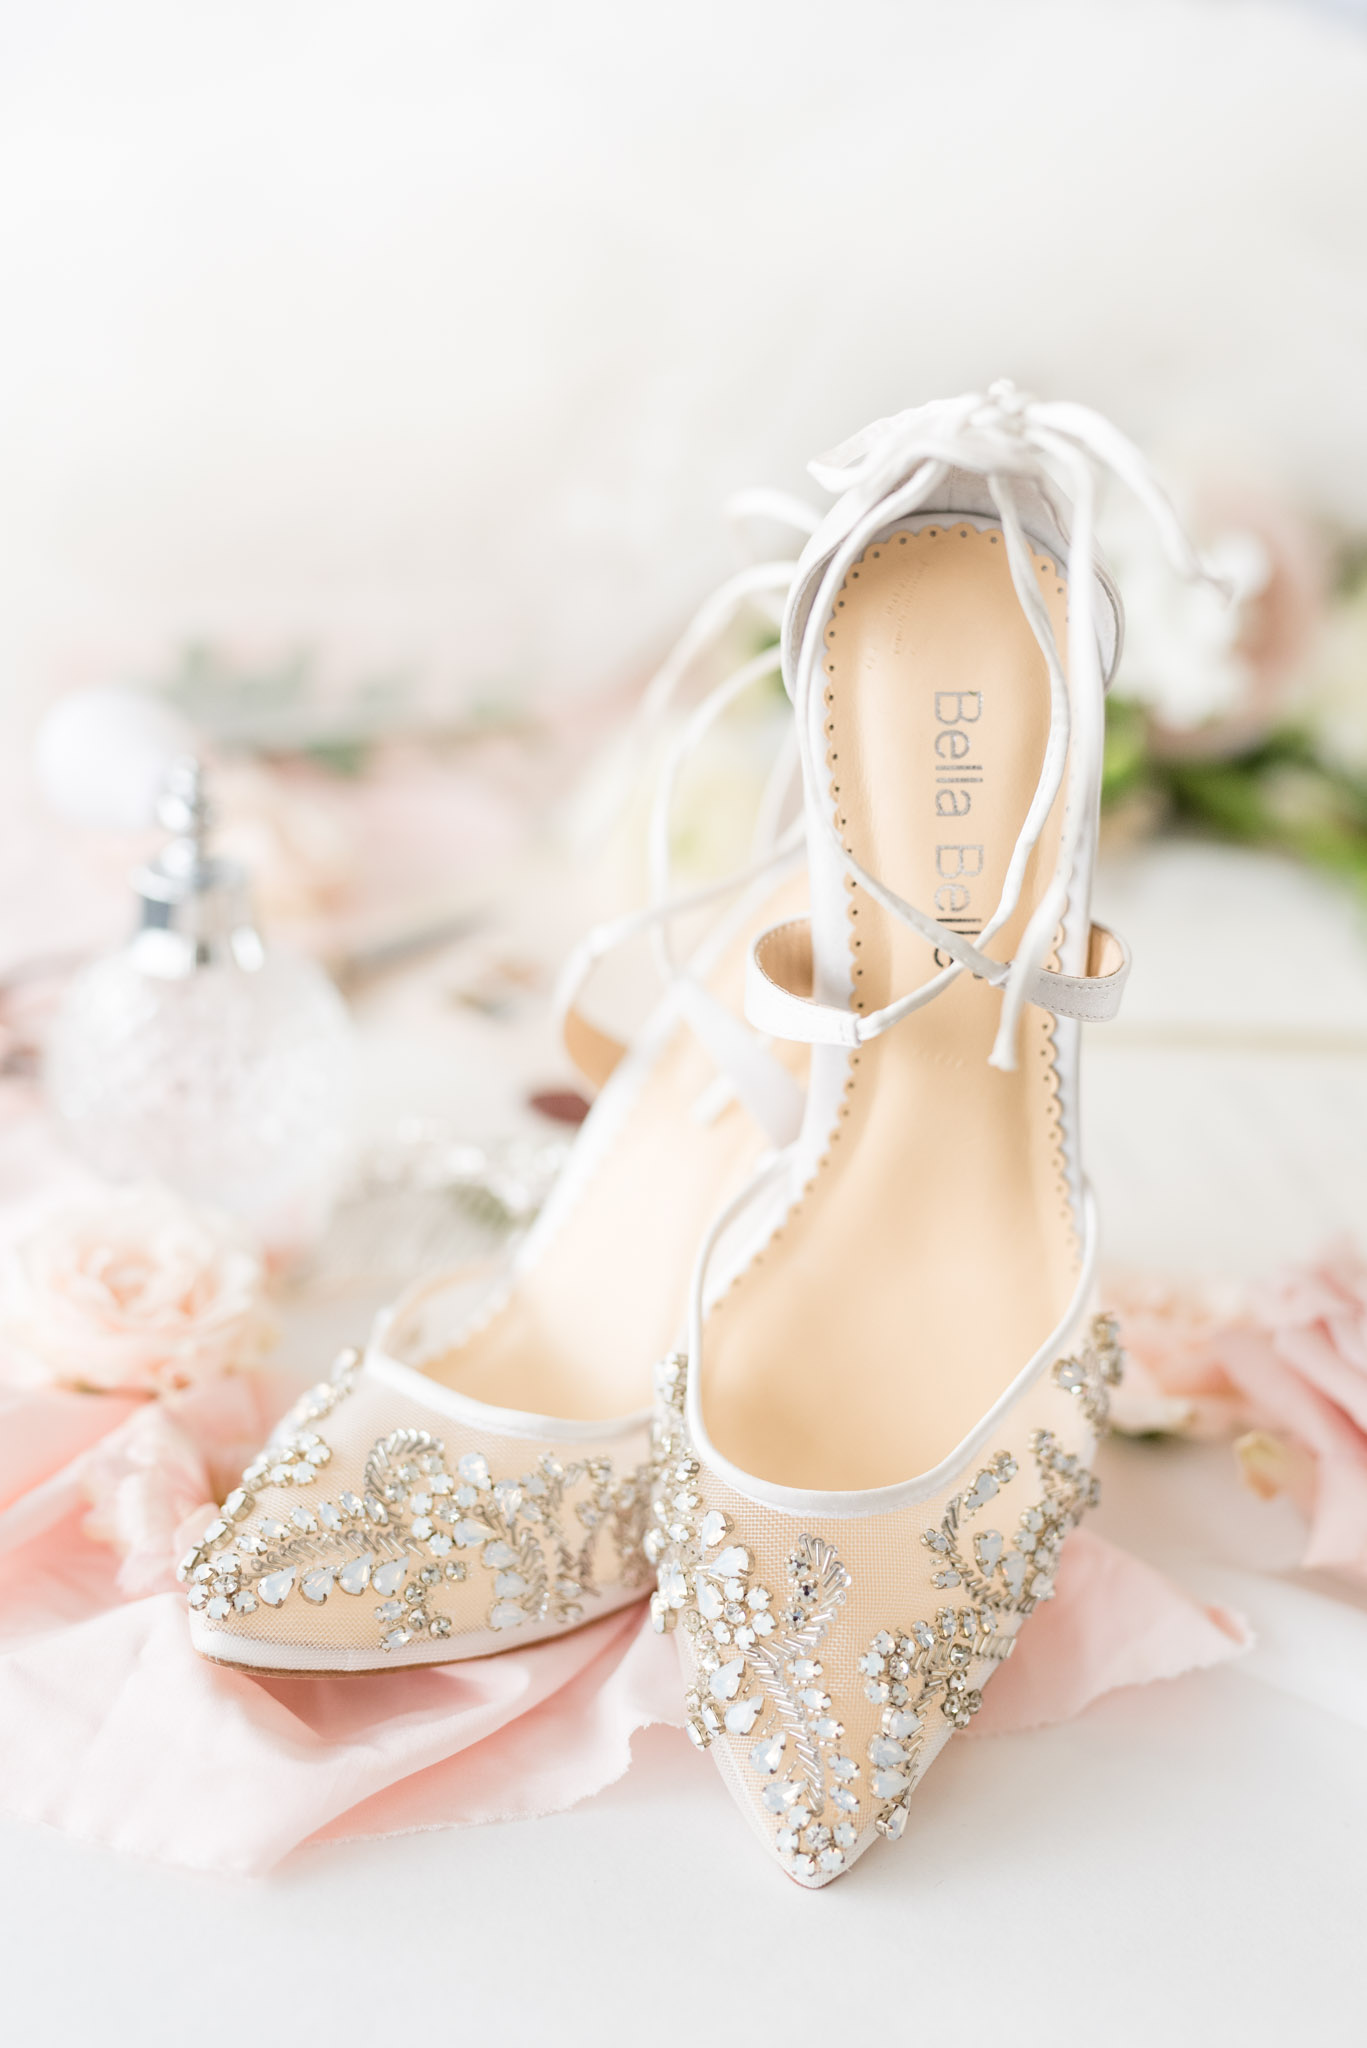 Jeweled wedding shoes sit on ribbon.